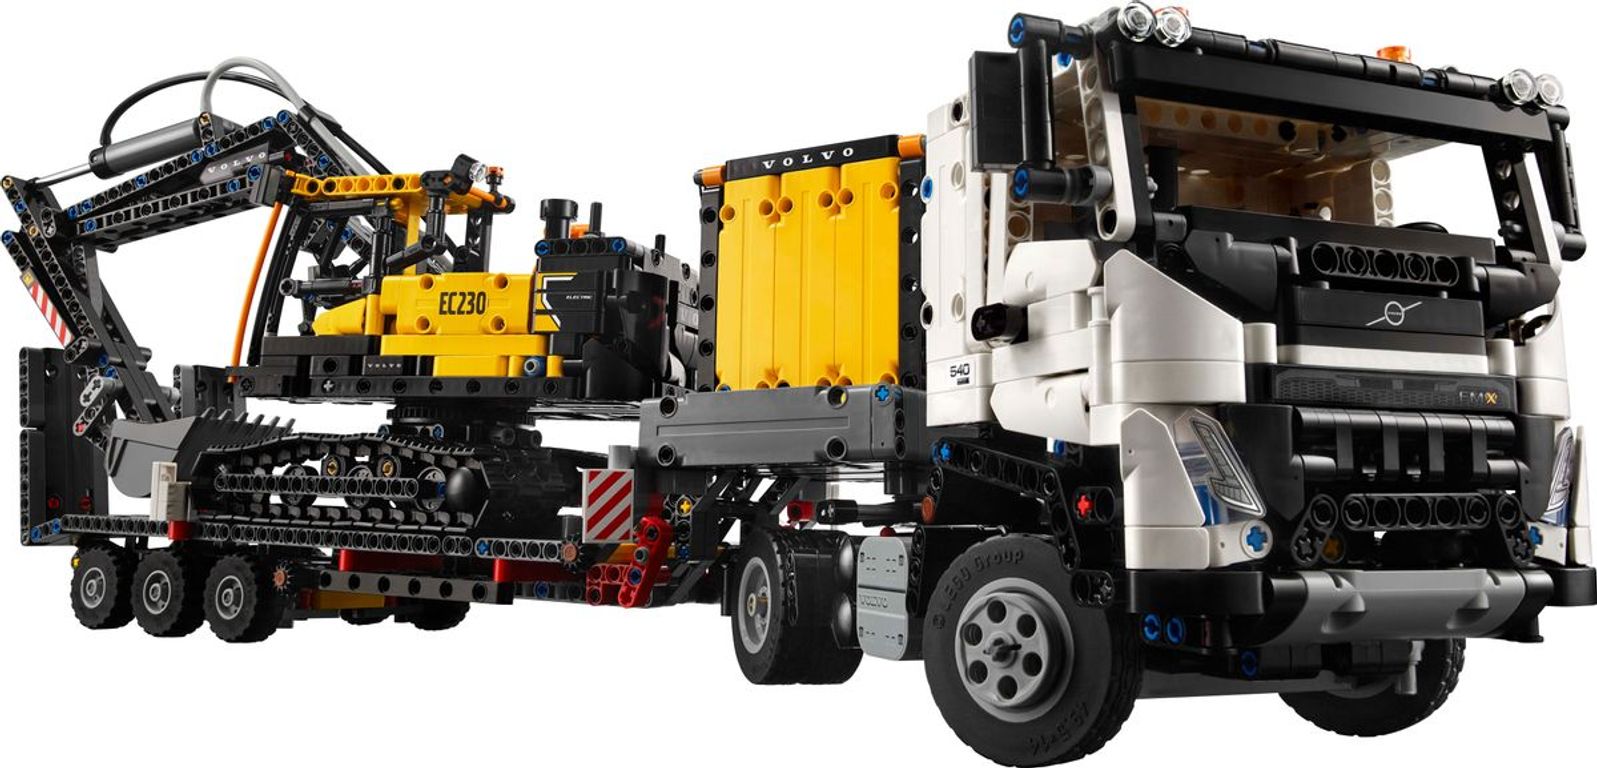 LEGO® Technic Volvo FMX Truck & EC230 Electric Excavator